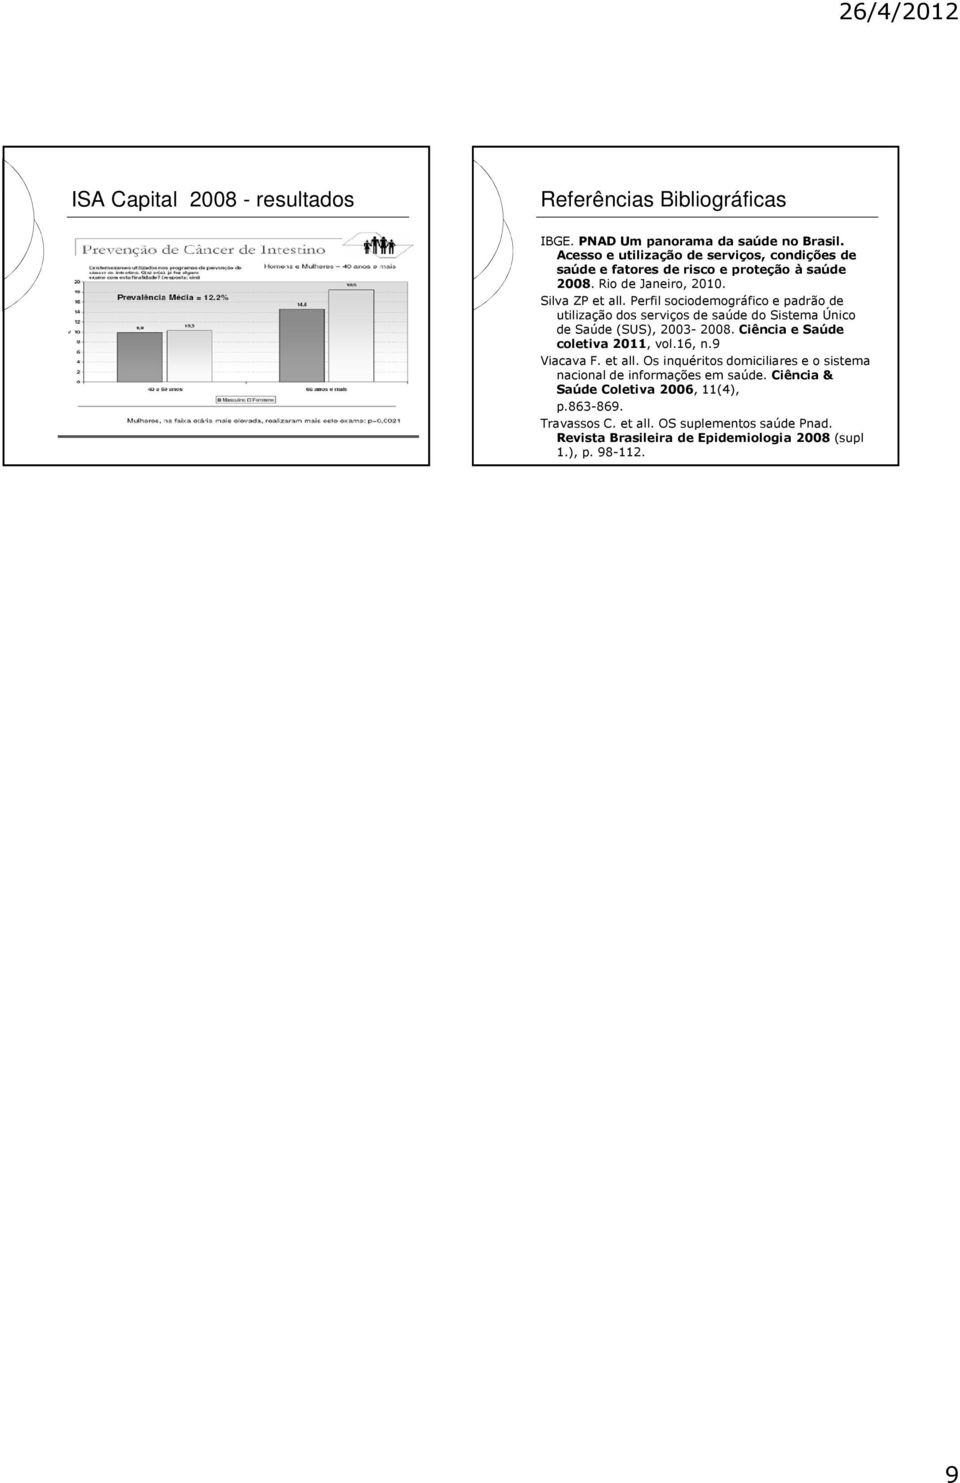 Perfil sociodemográfico e padrão de utilização dos serviços de saúde do Sistema Único de Saúde (SUS), 2003-2008. Ciência e Saúde coletiva 2011, vol.16, n.